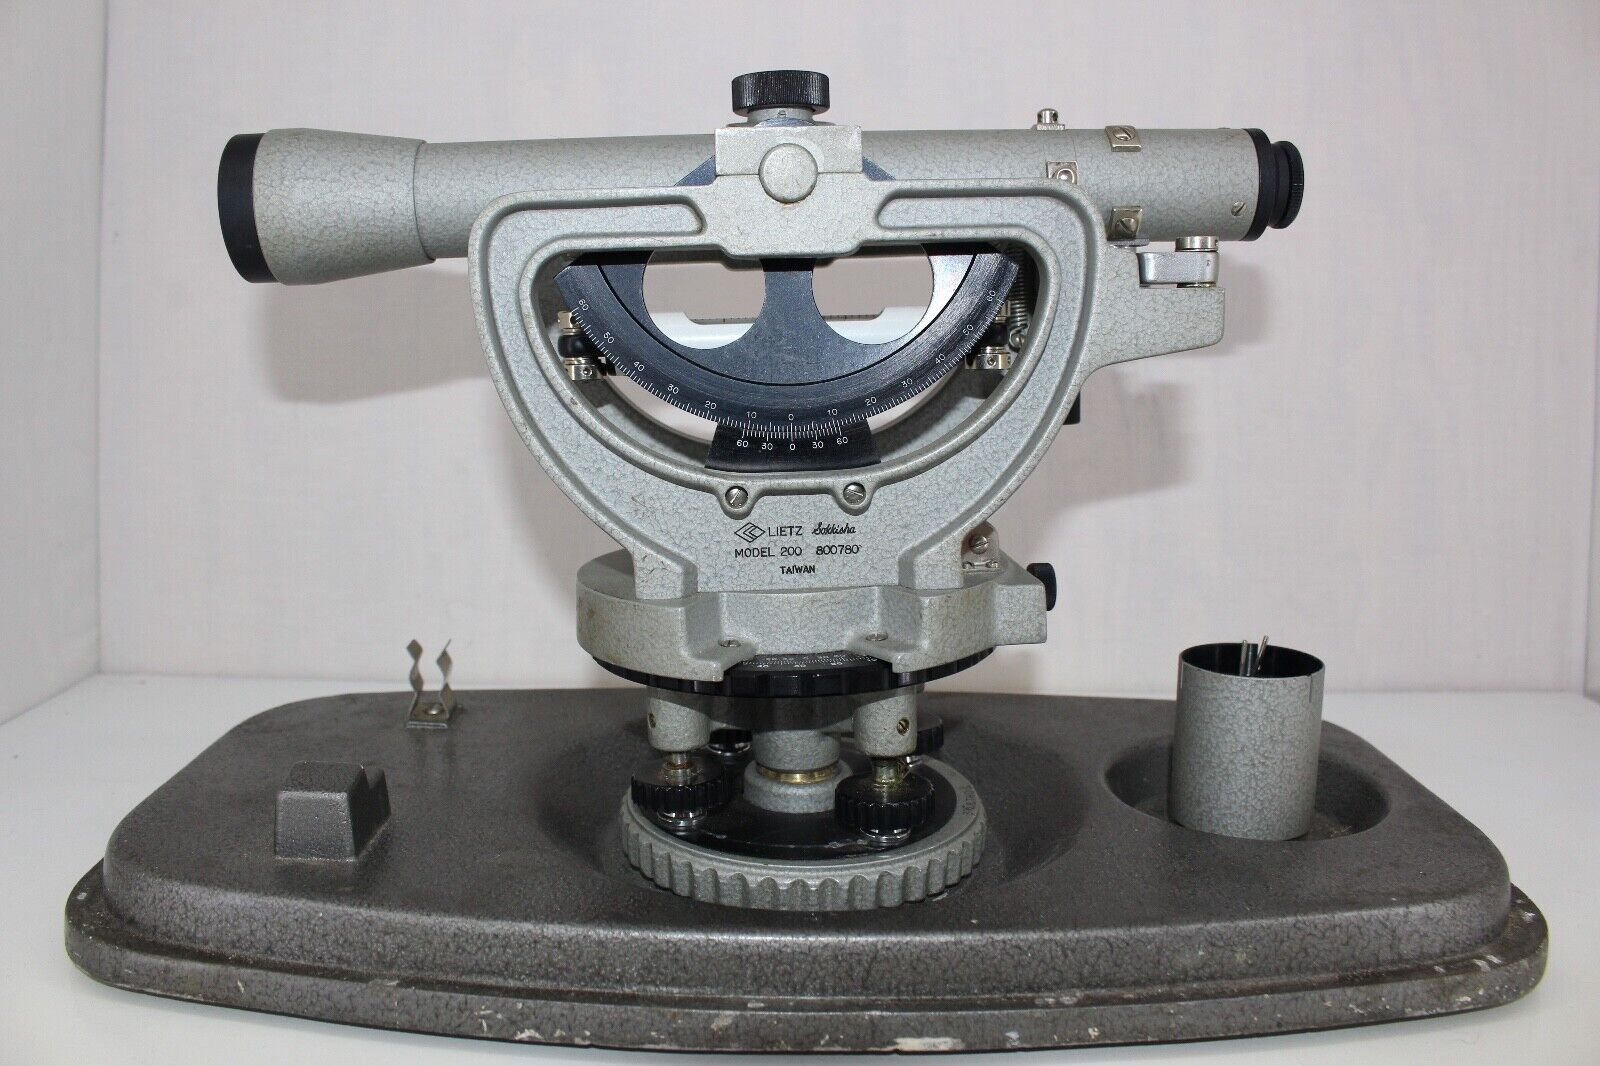 Leitz Sokkisha Model 200 Vintage Surveying Telescope level with Case 